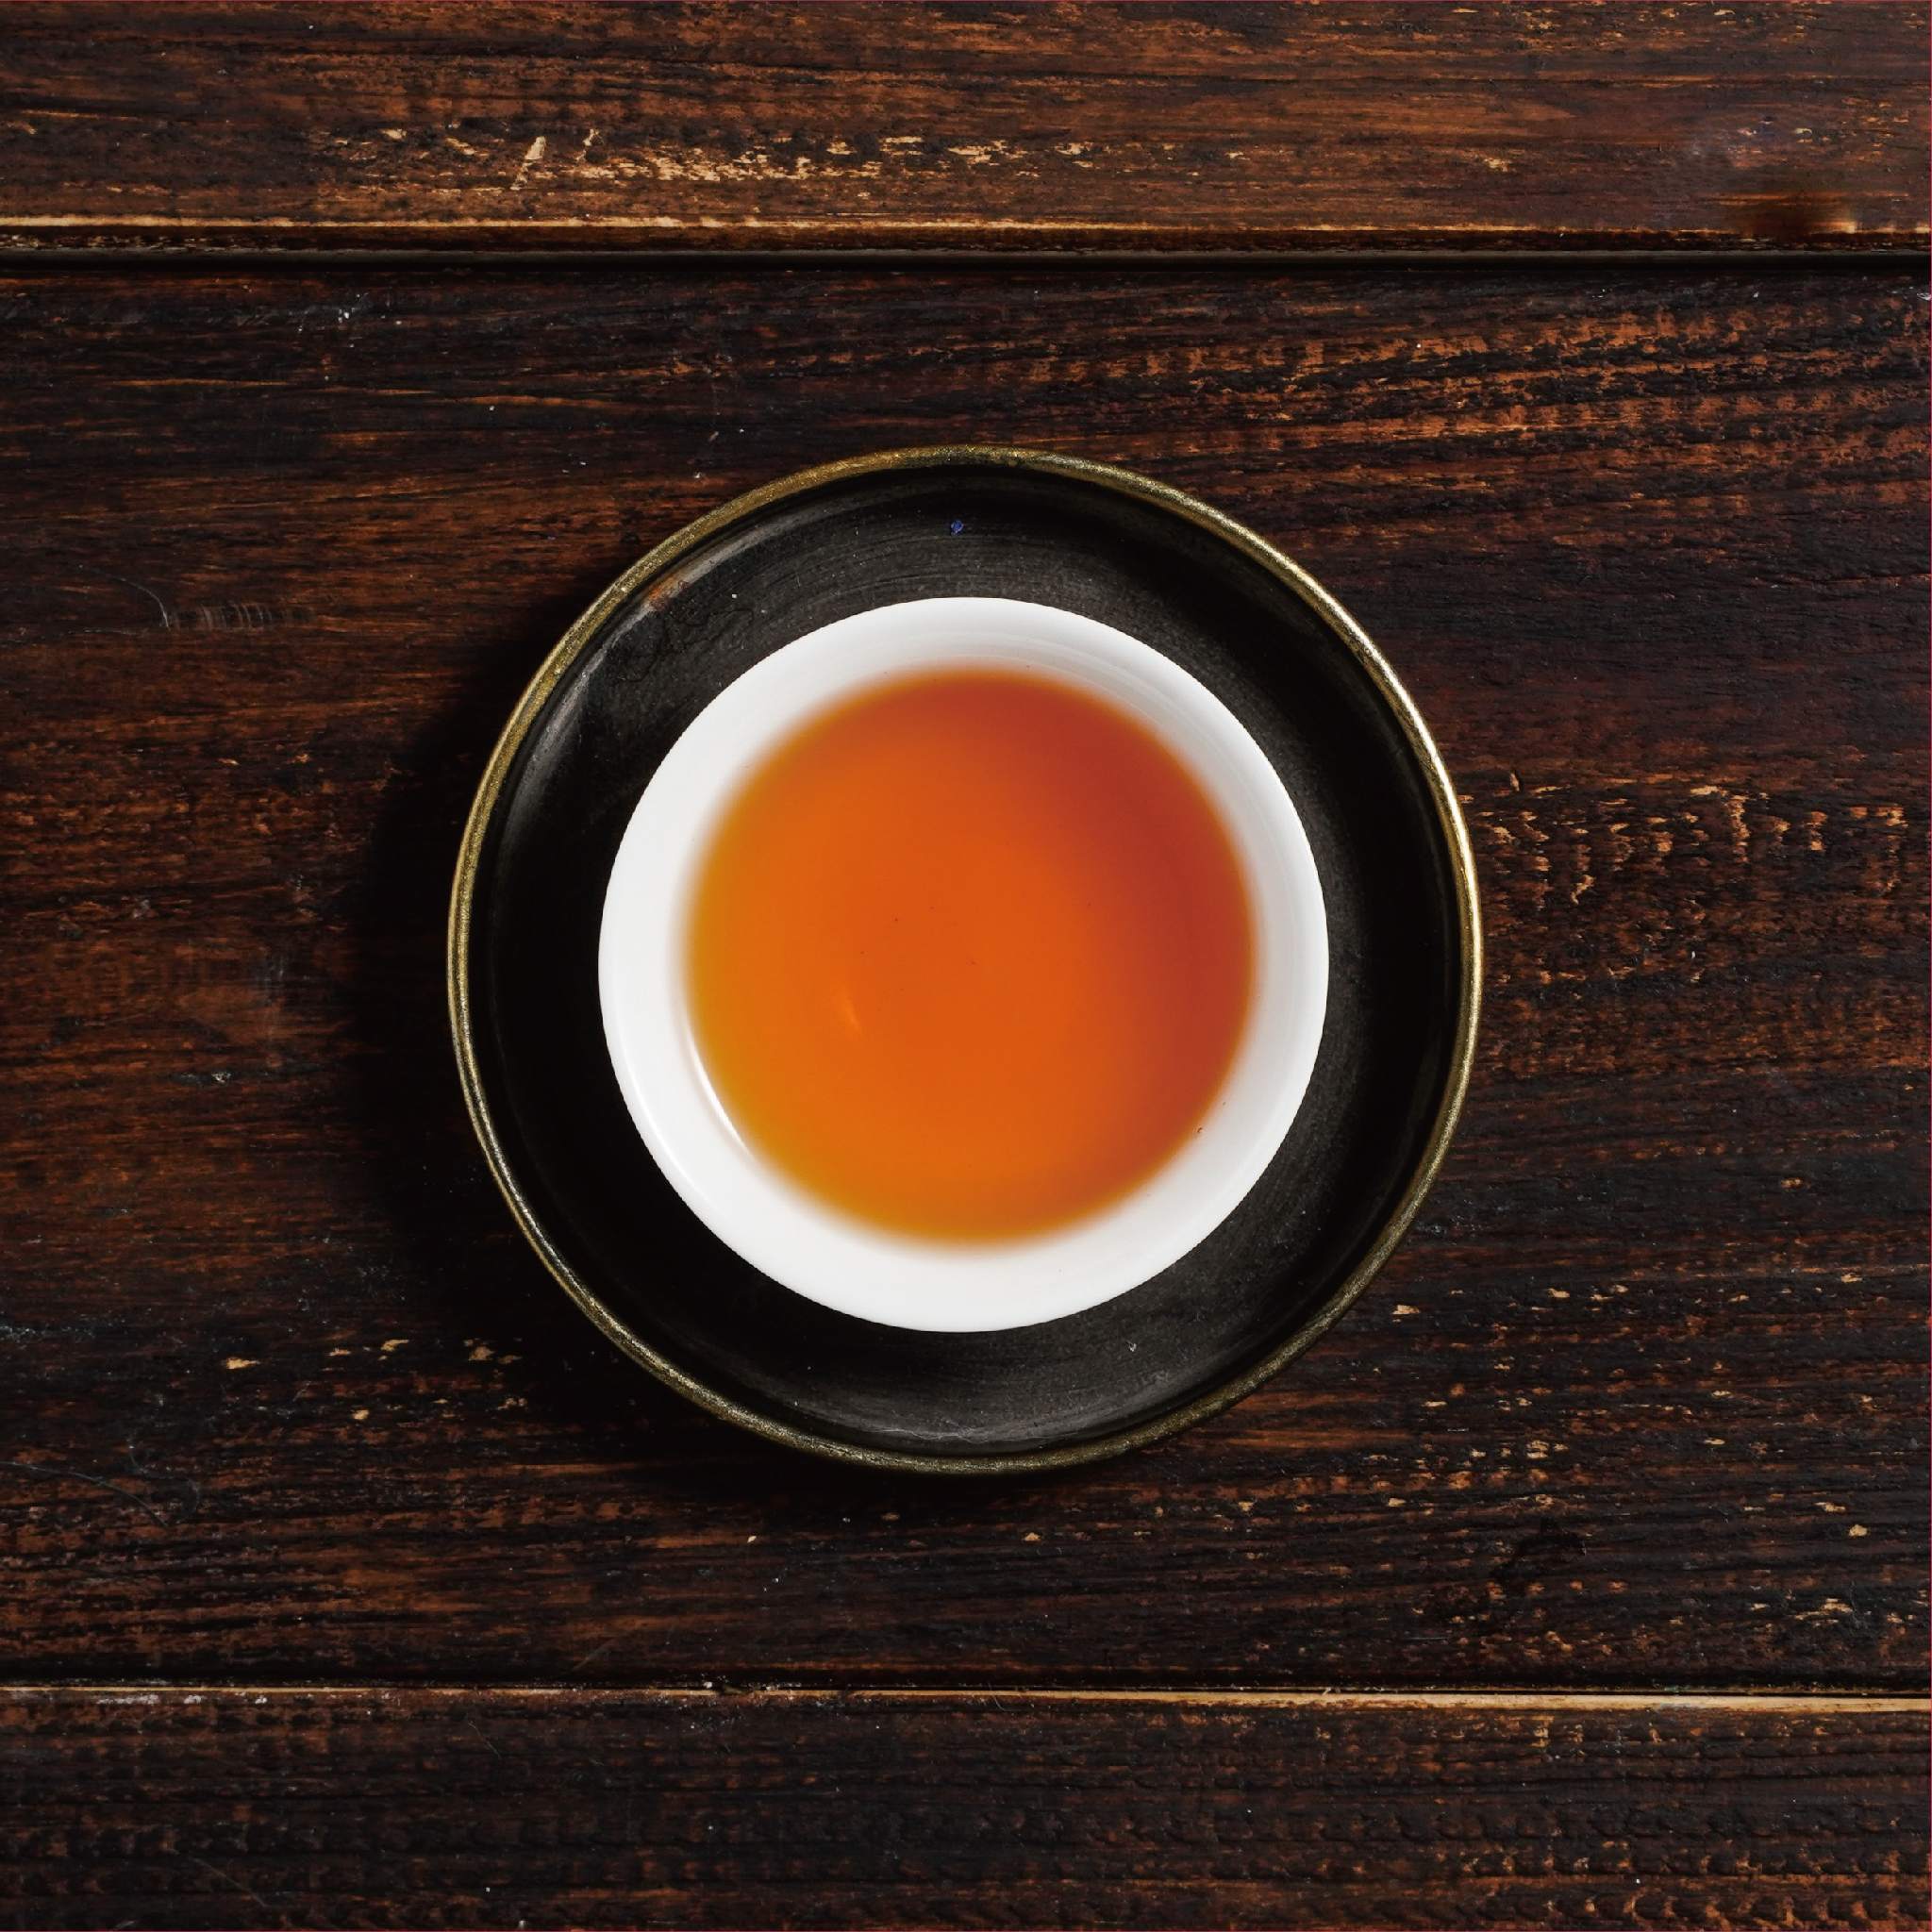 shui xian water sprite tea liquor in cup